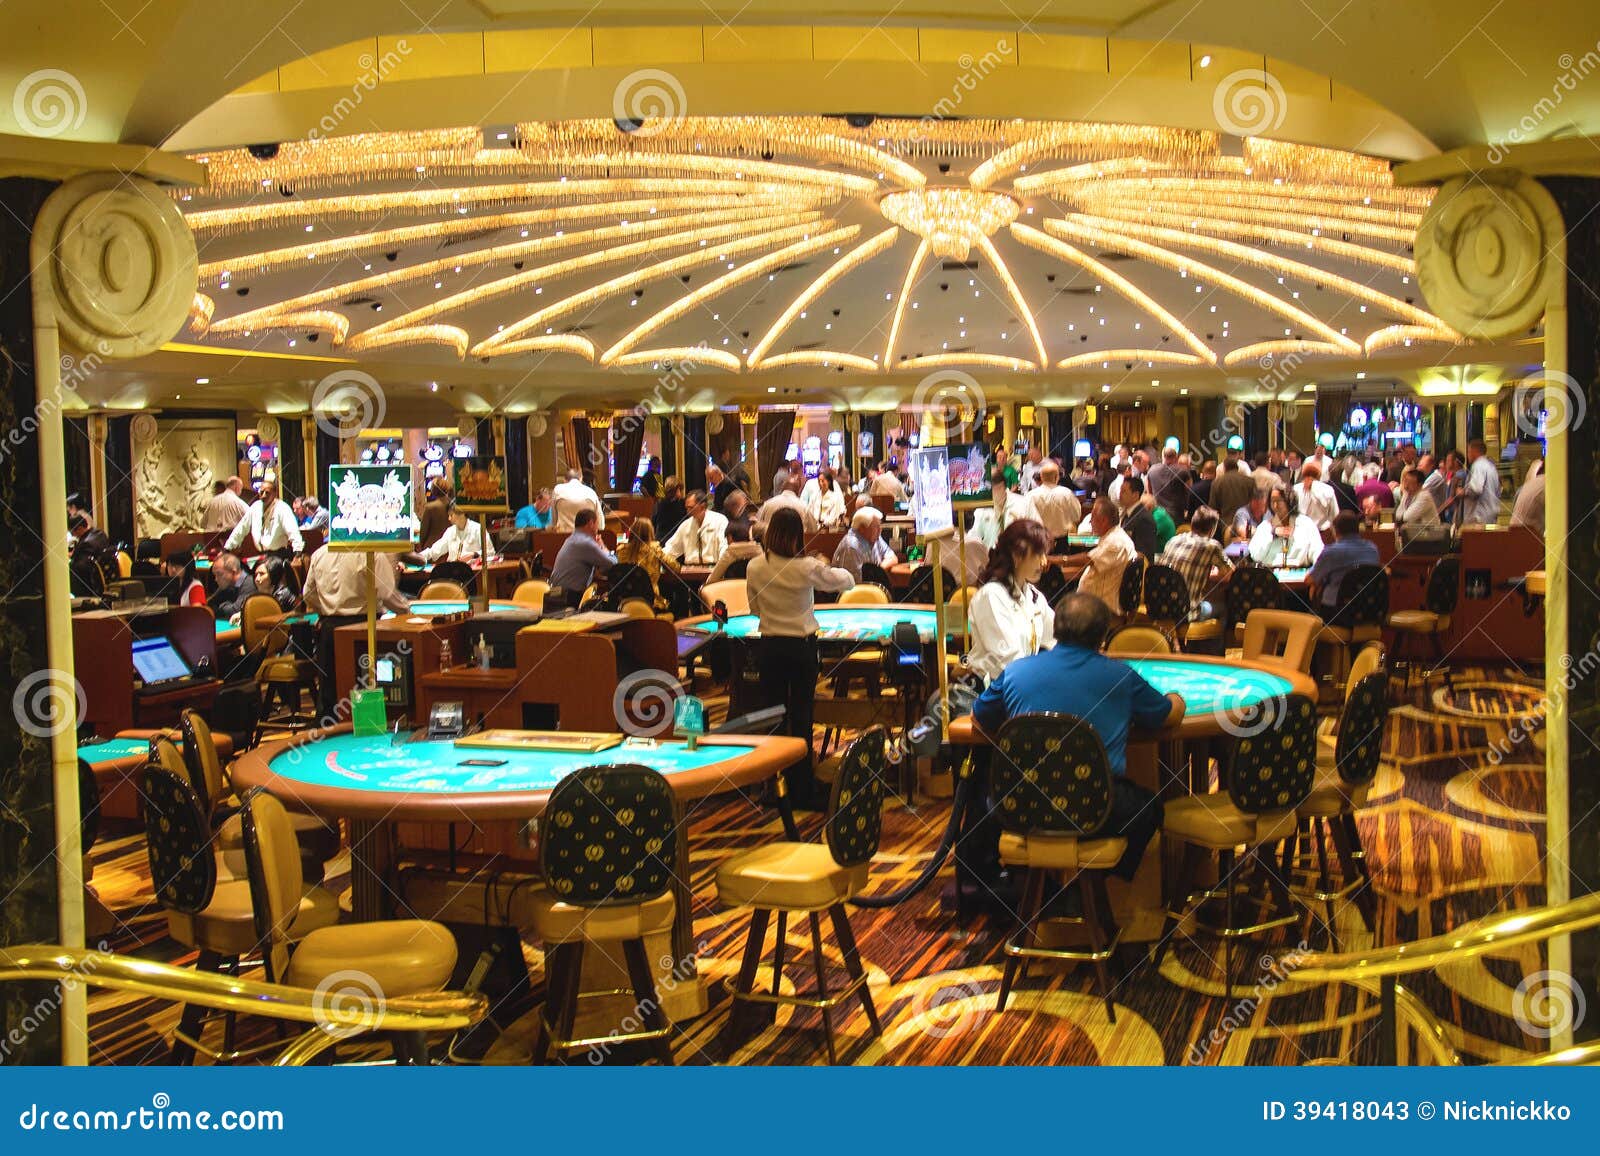 Kasino In Caesar S Palace In Las Vegas Redaktionelles